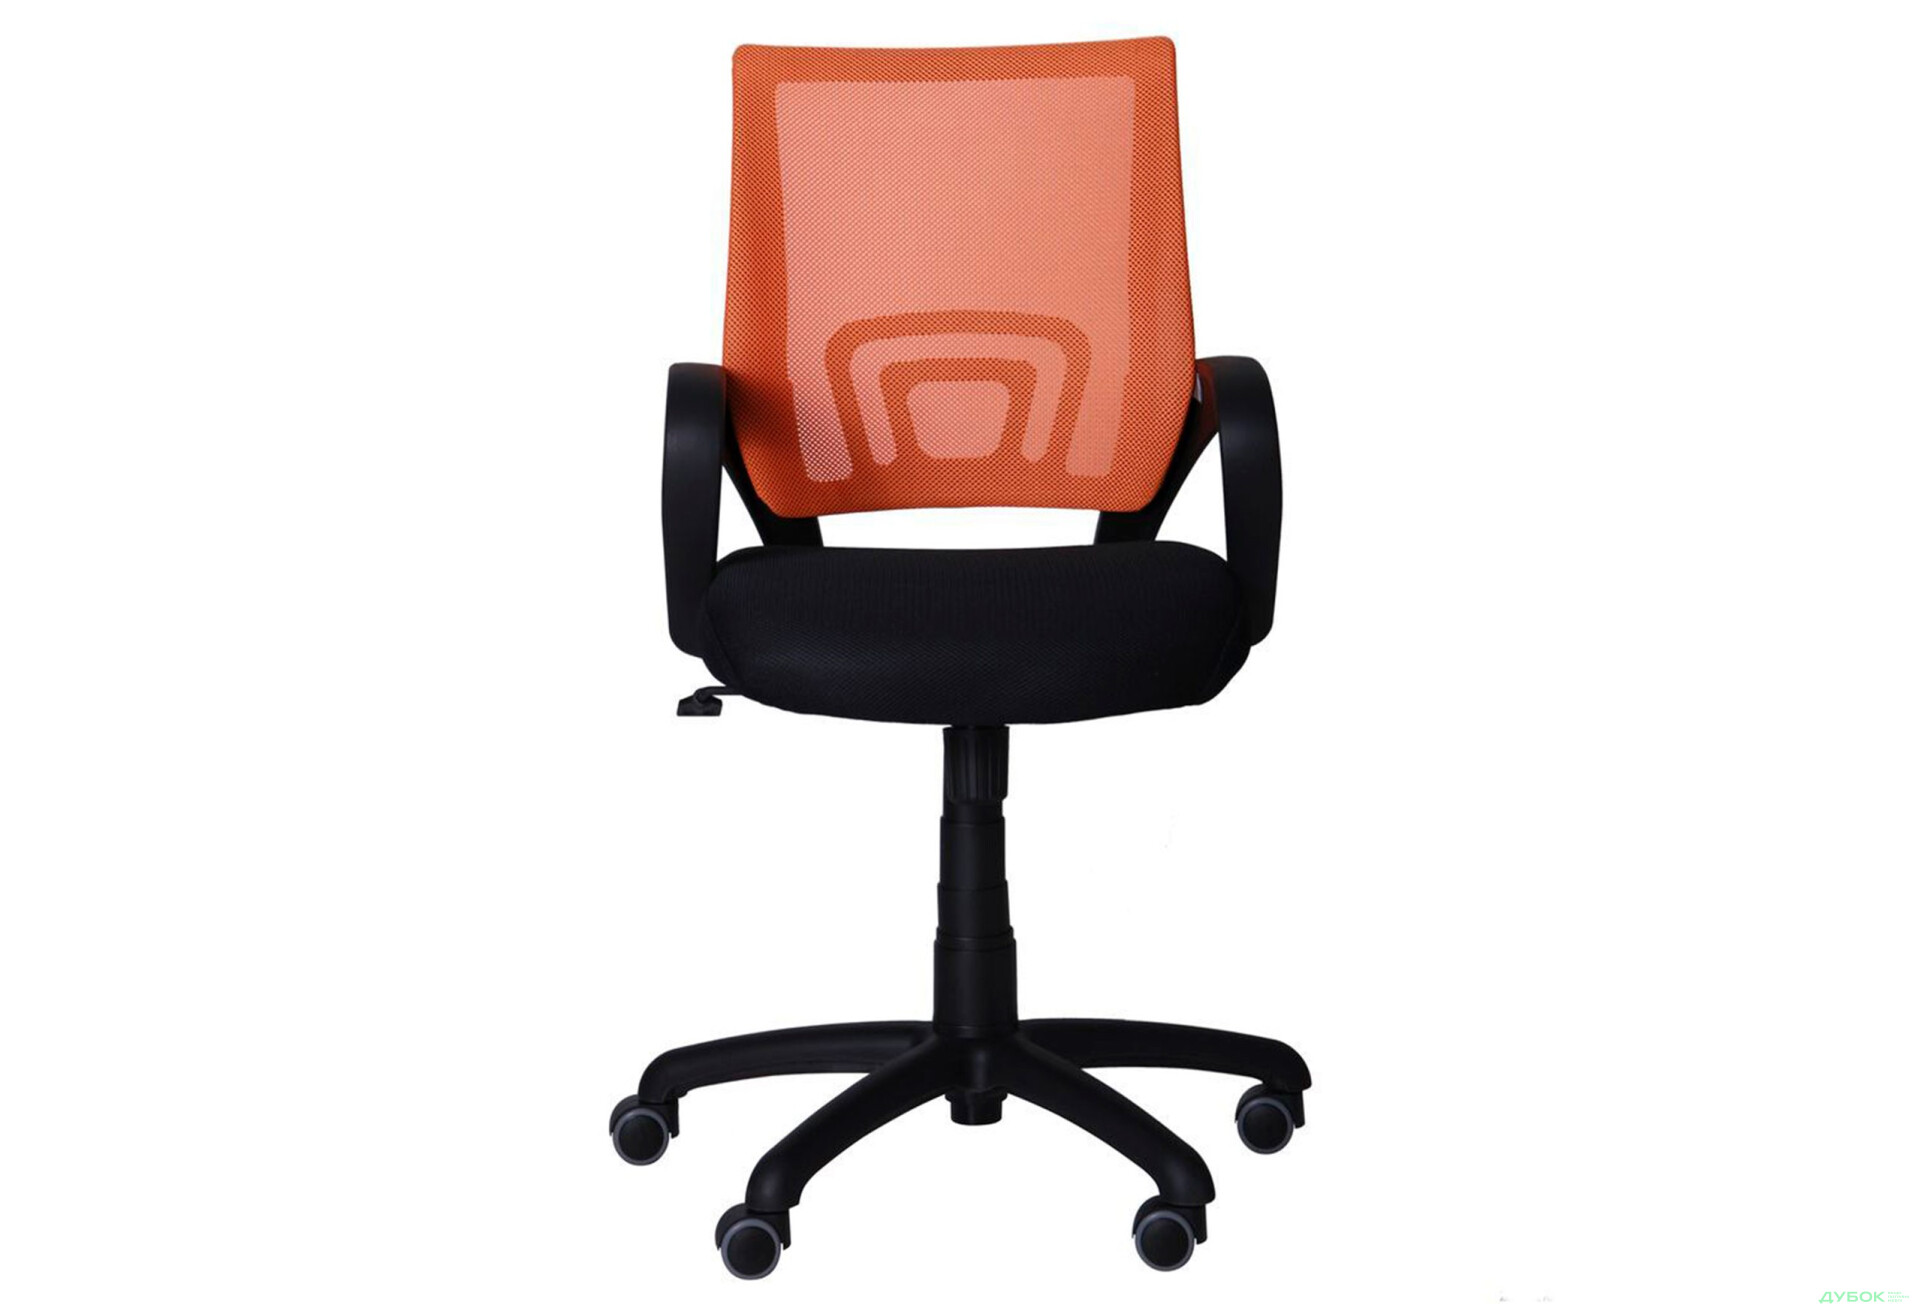 Фото 3 - Кресло Веб Tilt, сиденье сетка чёрная/спинка сетка оранжевая, арт.117026 АМФ